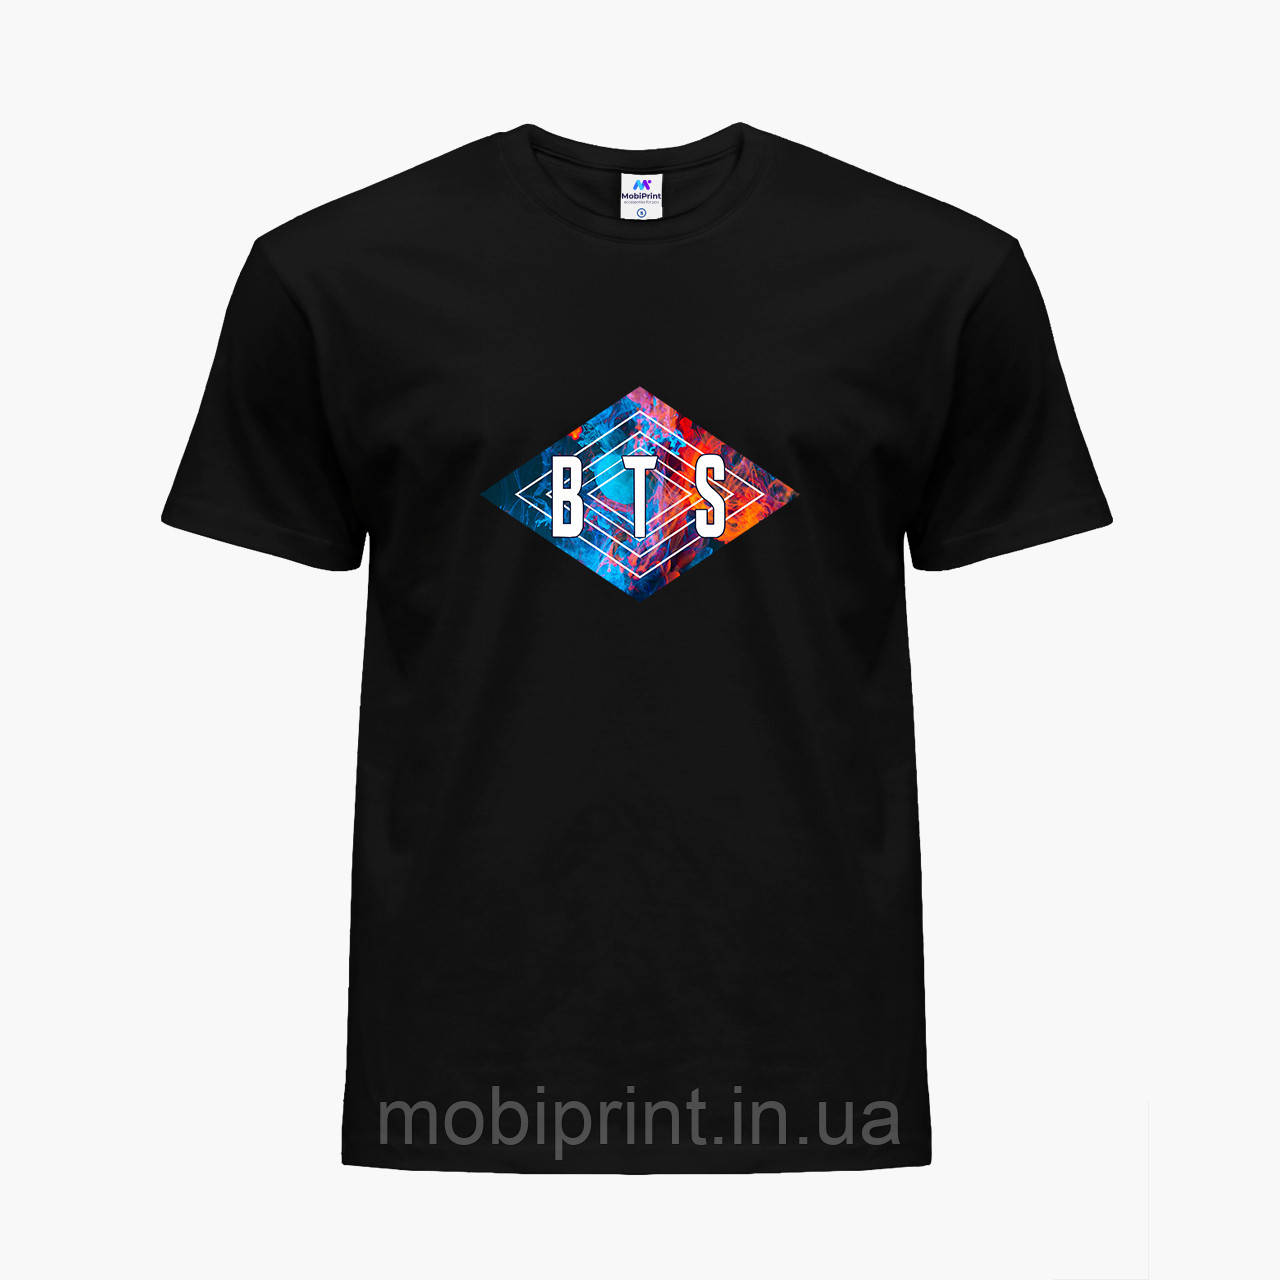 

Детская футболка для девочек БТС (BTS) (25186-1062) Черный 140